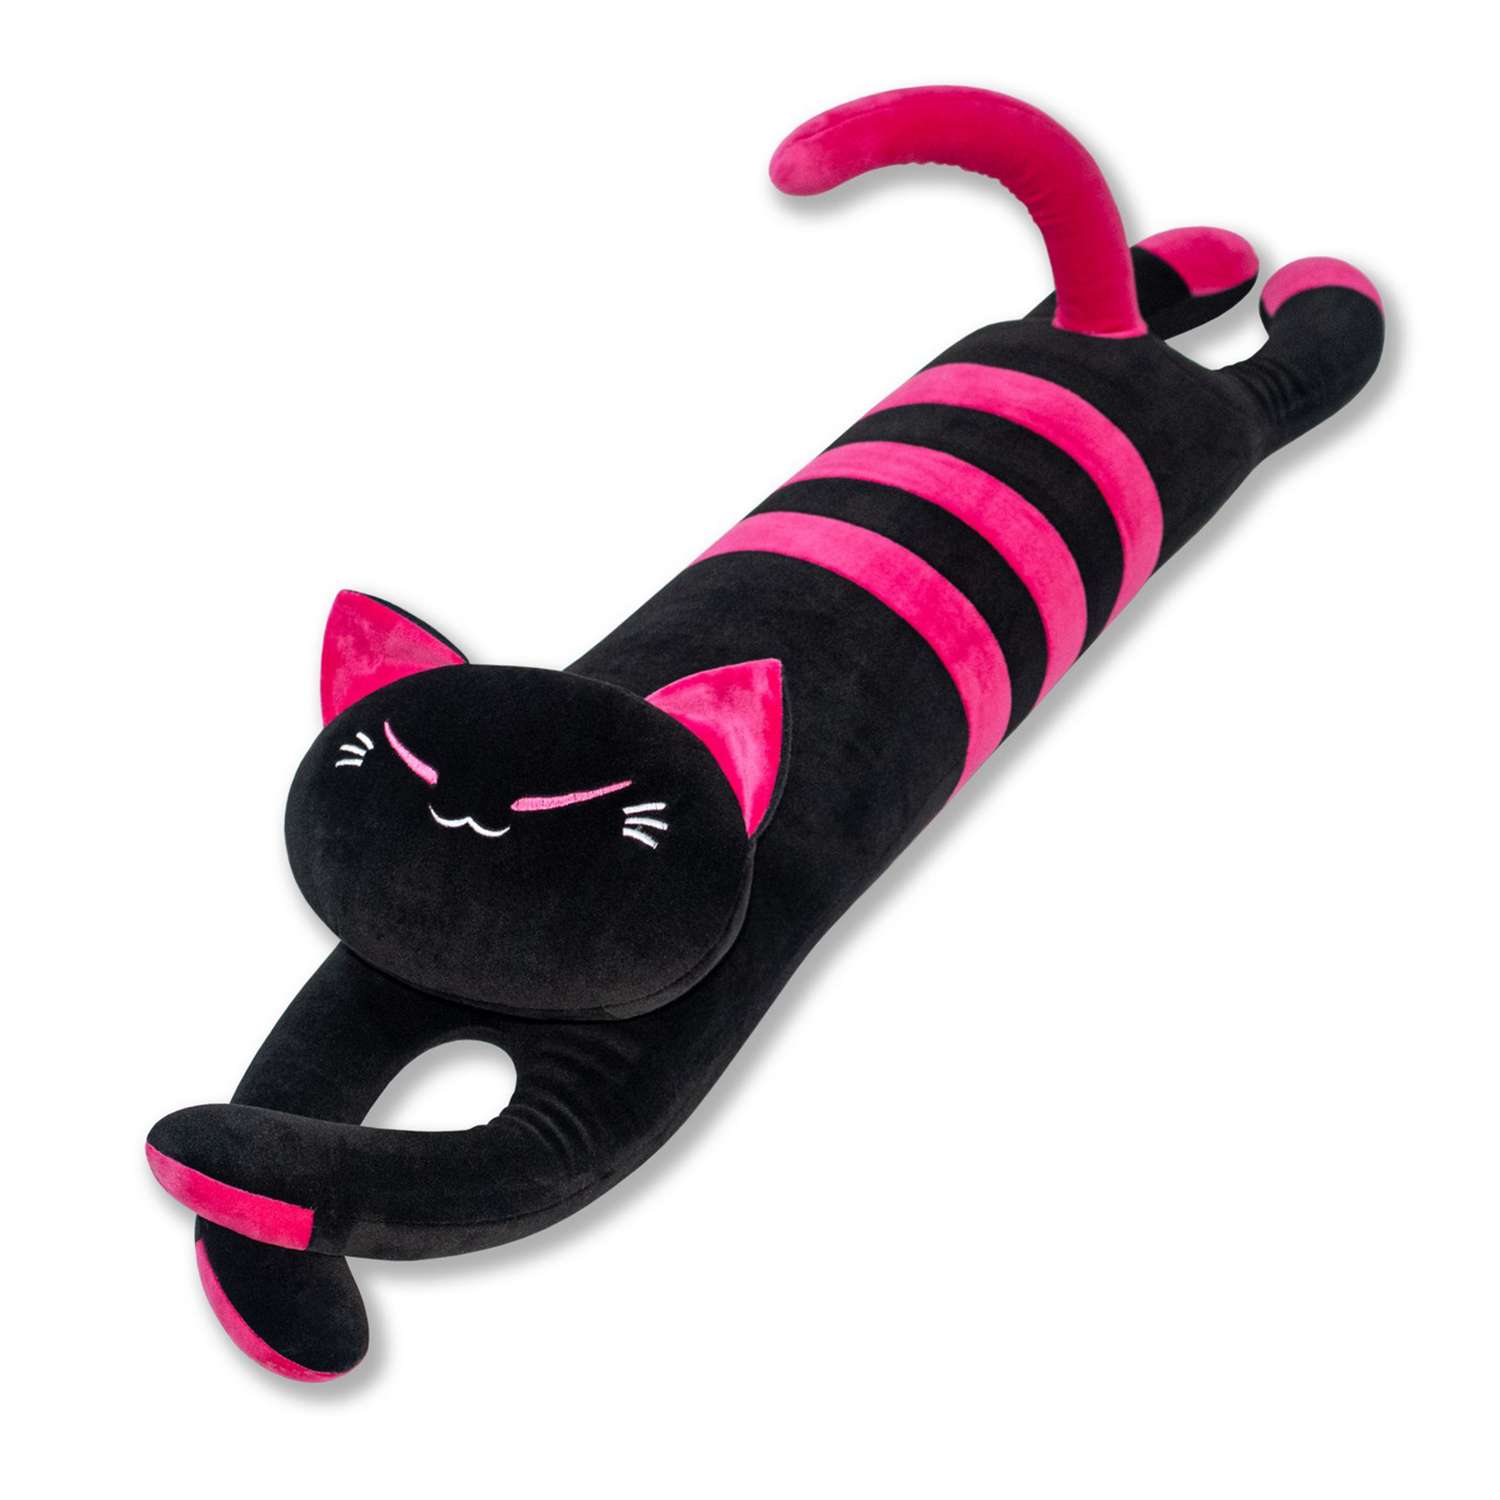 Игрушка антистресс Штучки к которым тянутся ручки Черный кот Розовый 20аси52ив-2 - фото 1